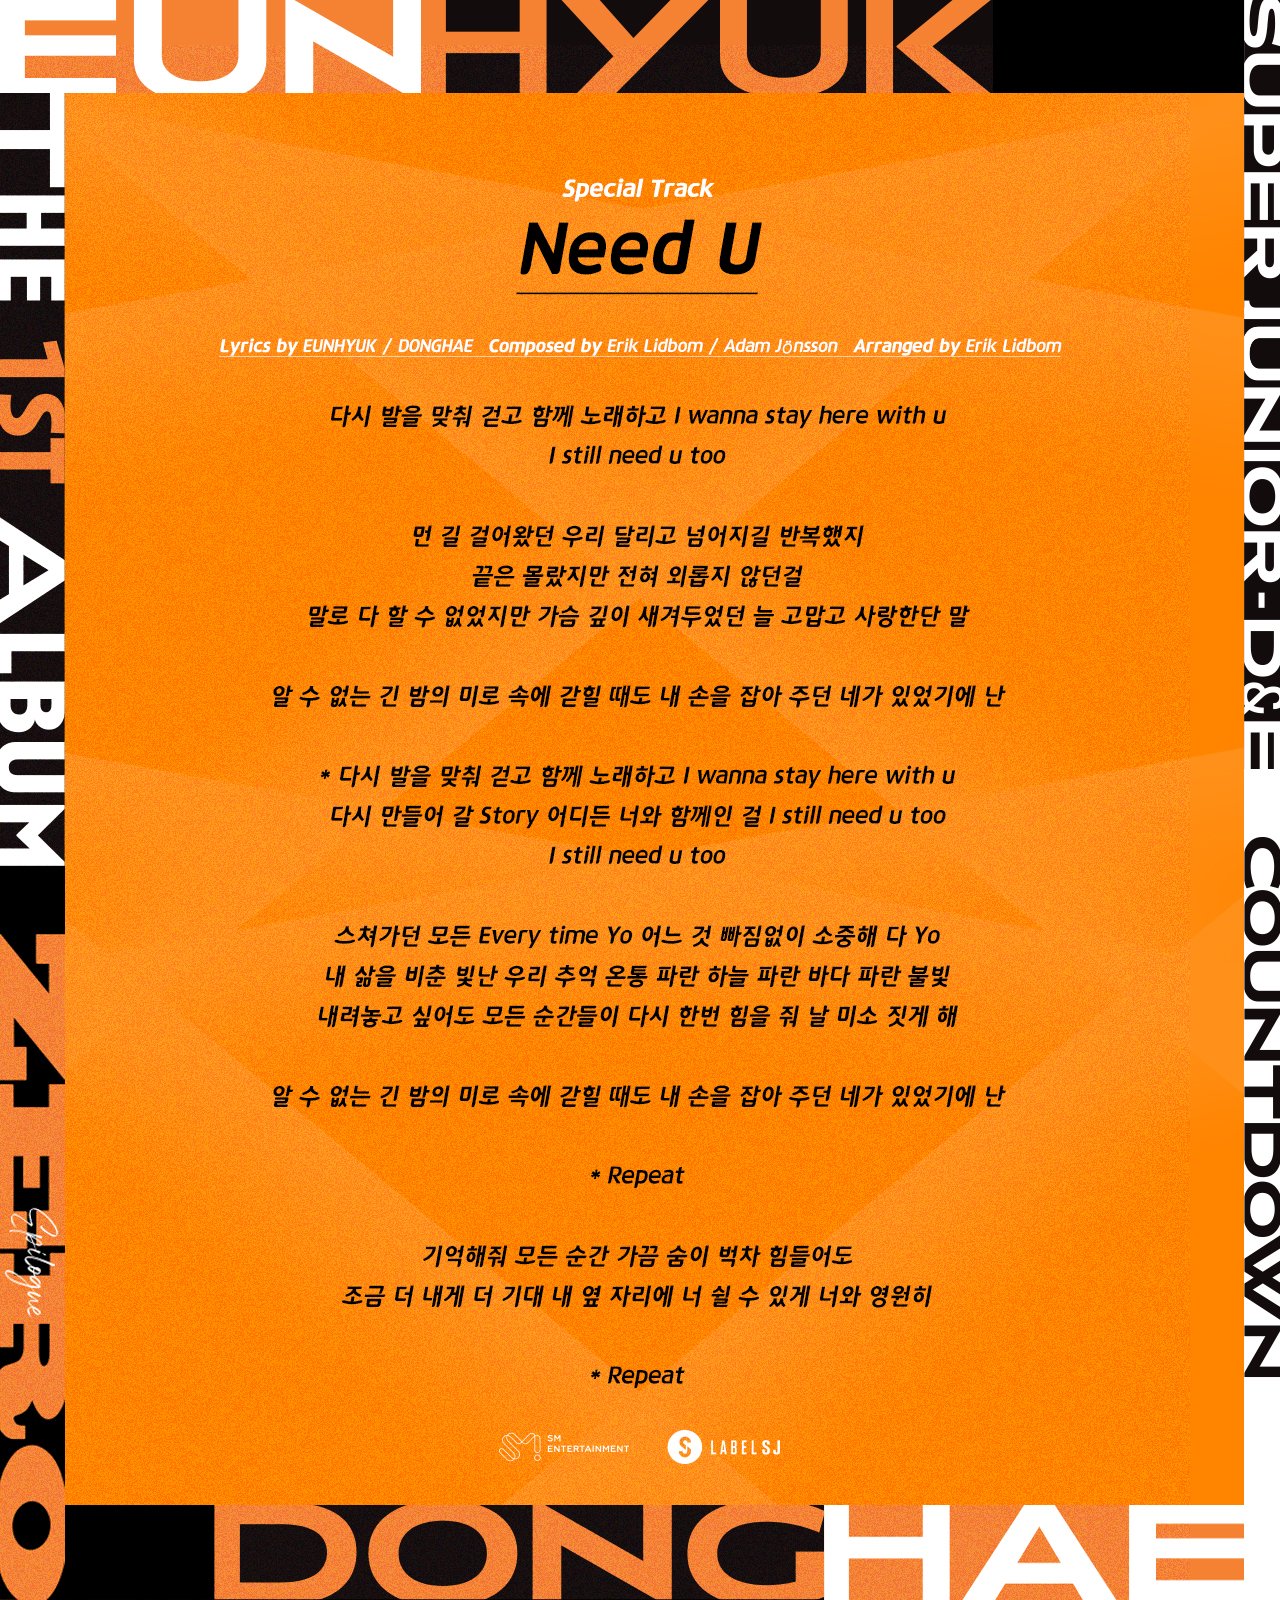 슈퍼주니어-D&E, ‘Need U’ 리릭 이미지 공개